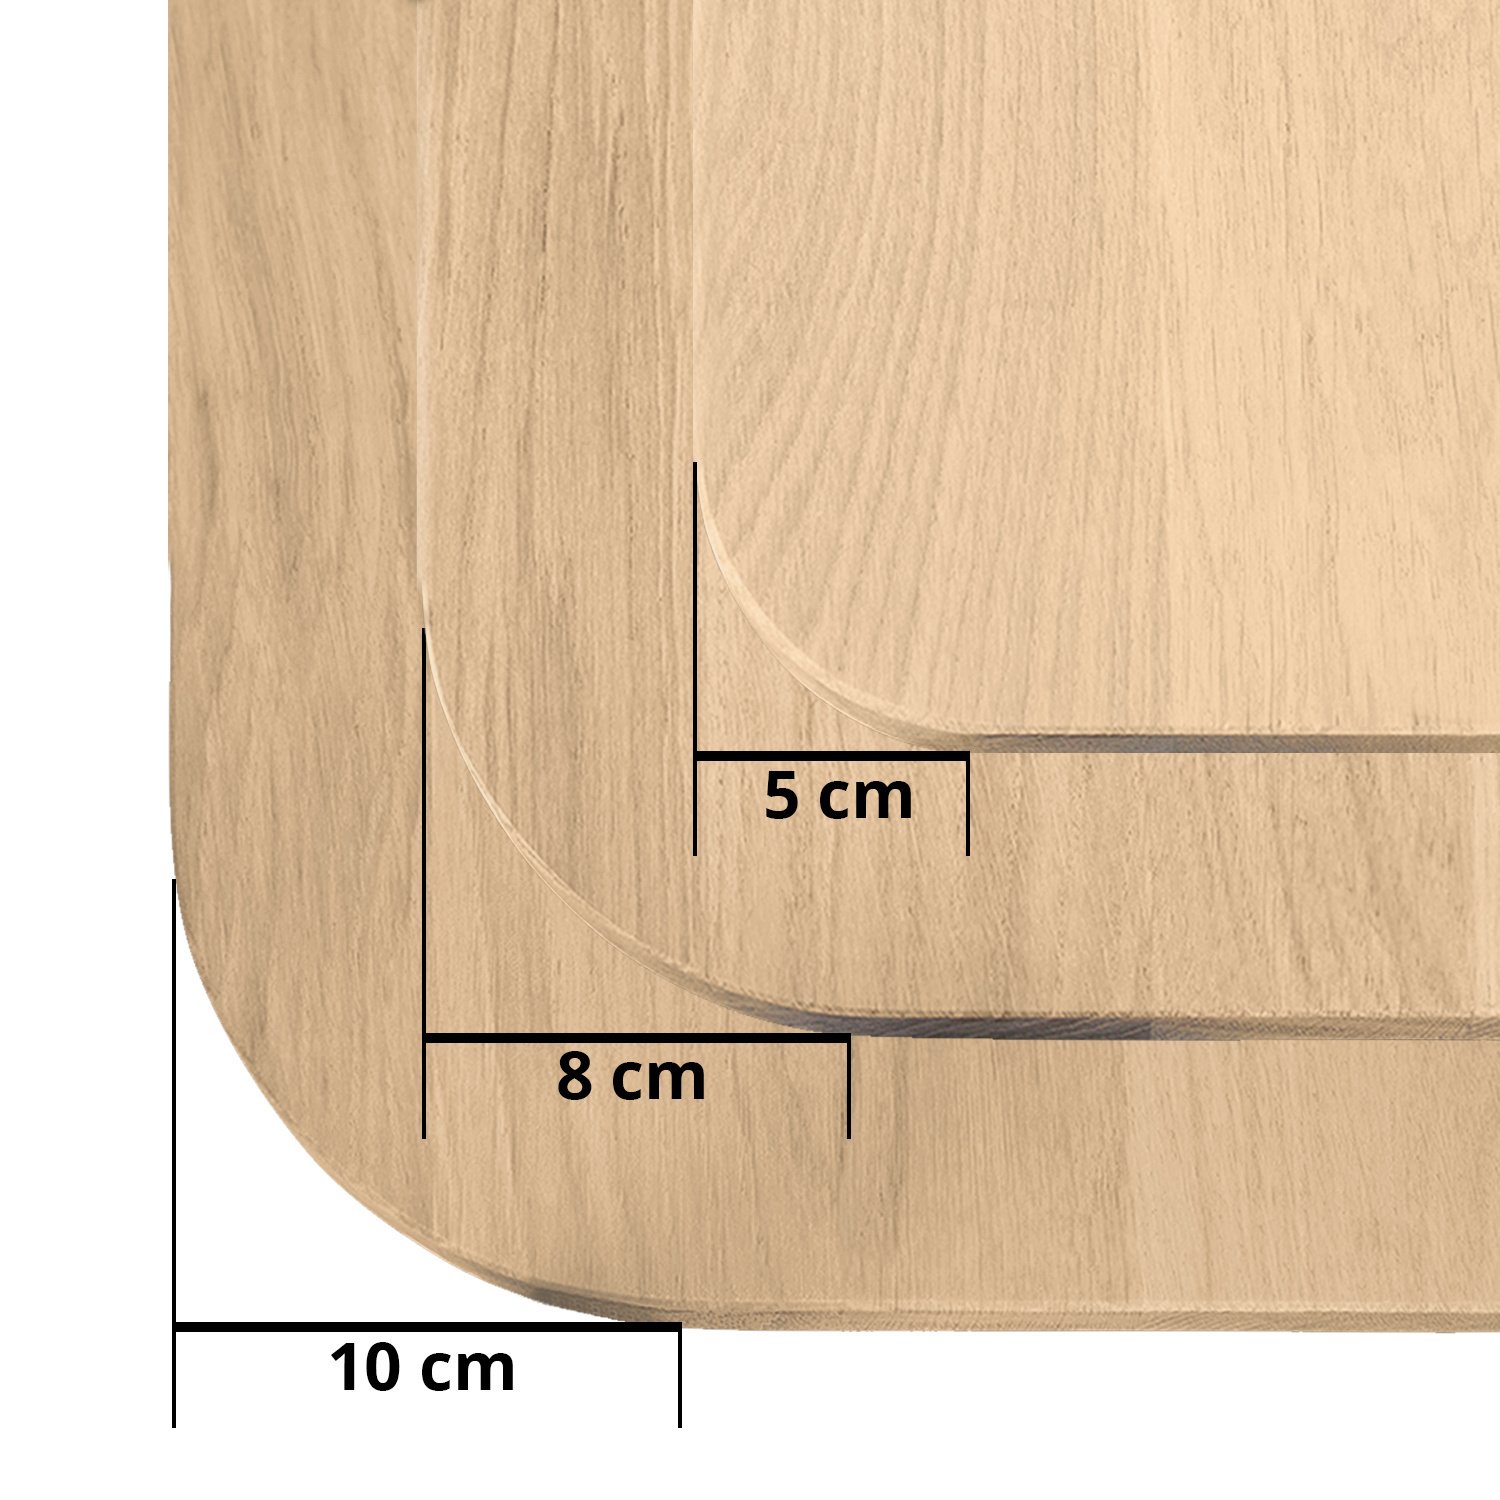  Eiken wandplank zwevend met ronde hoeken - op maat - 2,7 cm dik (1-laag) - foutvrij - voorgeboord inclusief (blinde) bevestigingsbeugels - verlijmd Europees eikenhout foutvrij - kd 8-12% - 20-30x50-248 cm - Afgeronde hoeken radius 5, 8, of 10 cm